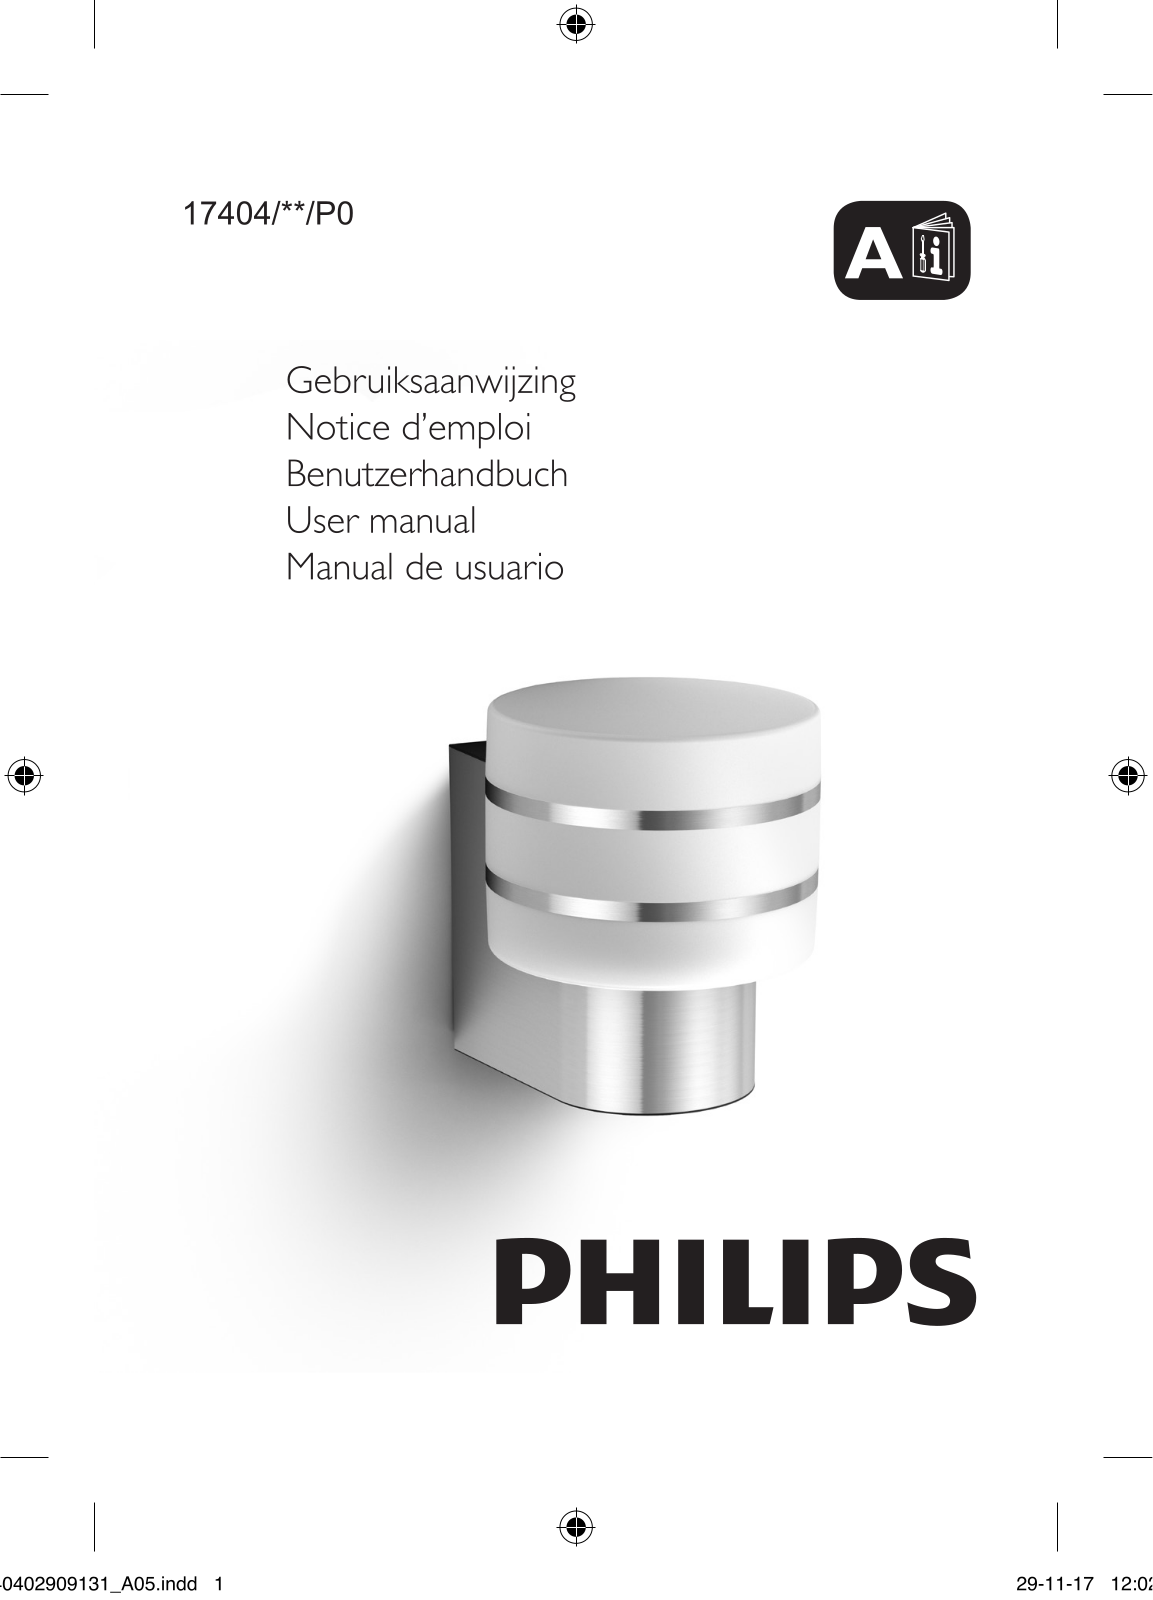 Philips 16404/**/P0 User manual